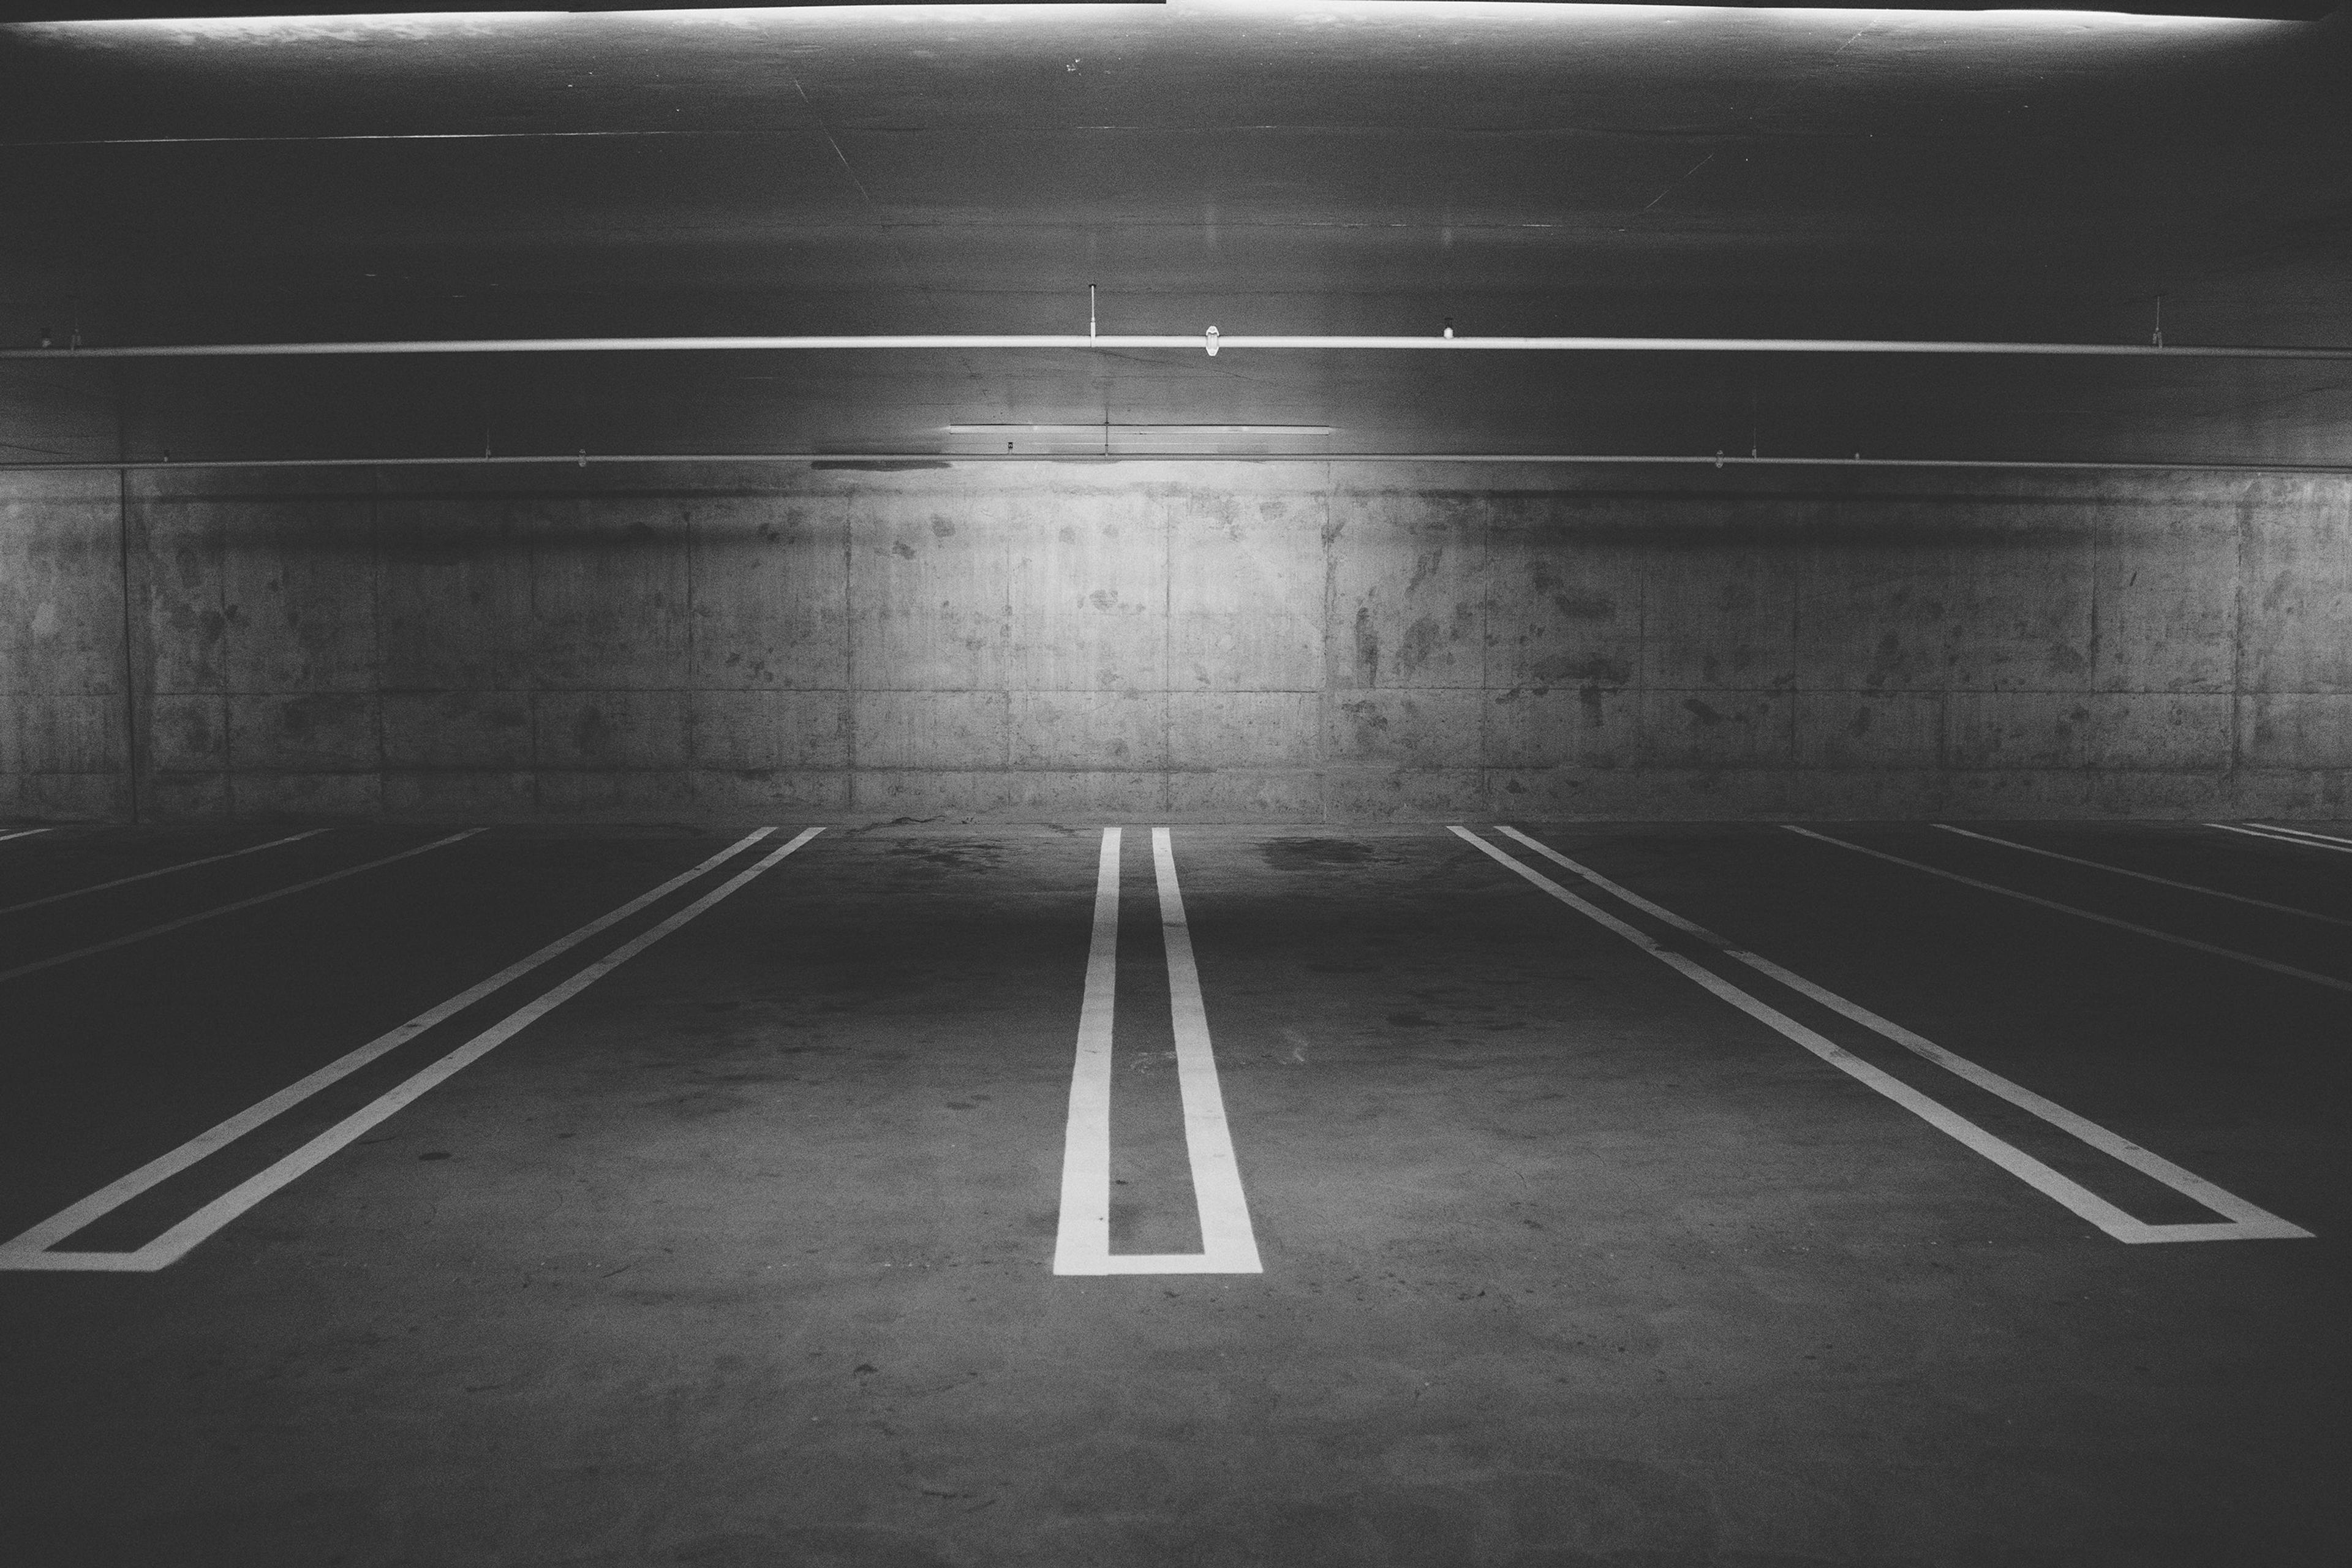 Shareway mahdollistaa parkkipaikkojen vertaisvuokraamisen helposti ja edullisesti